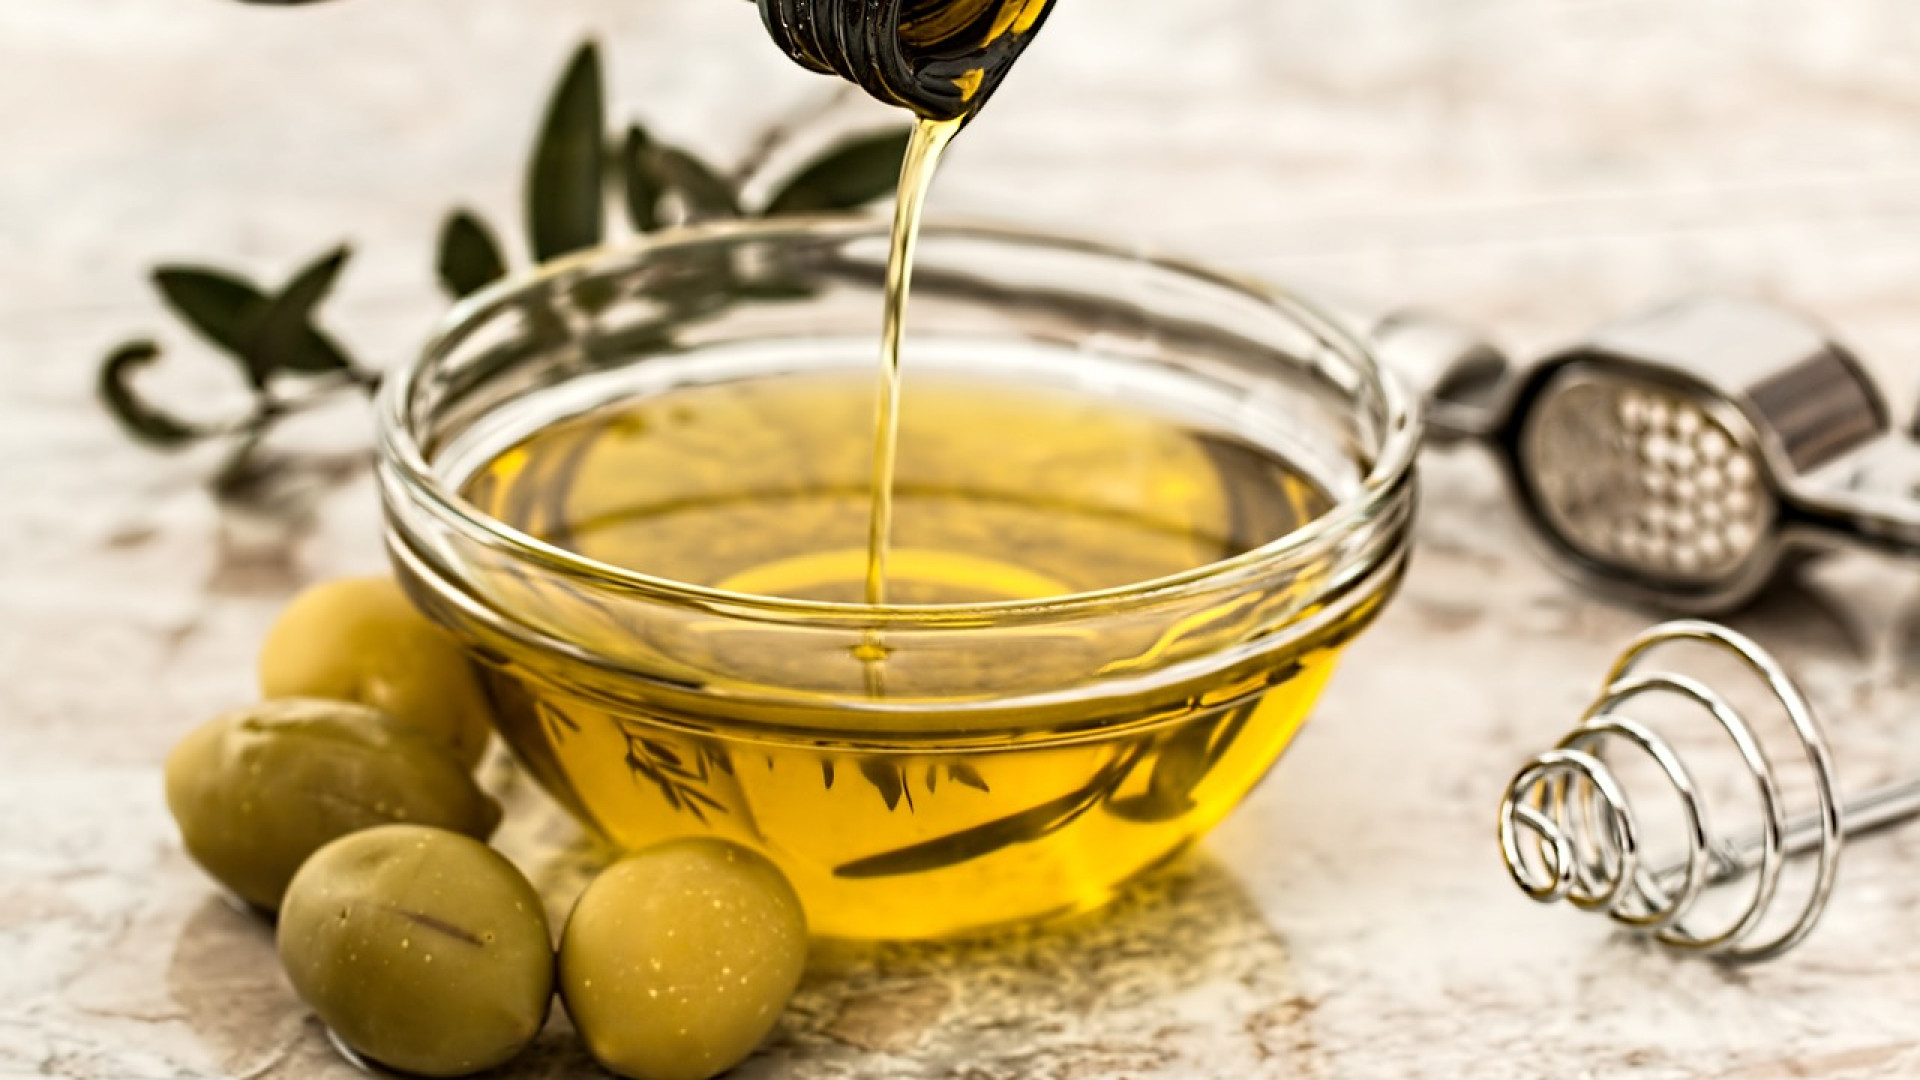 Pourquoi utiliser de l'huile d'olive?